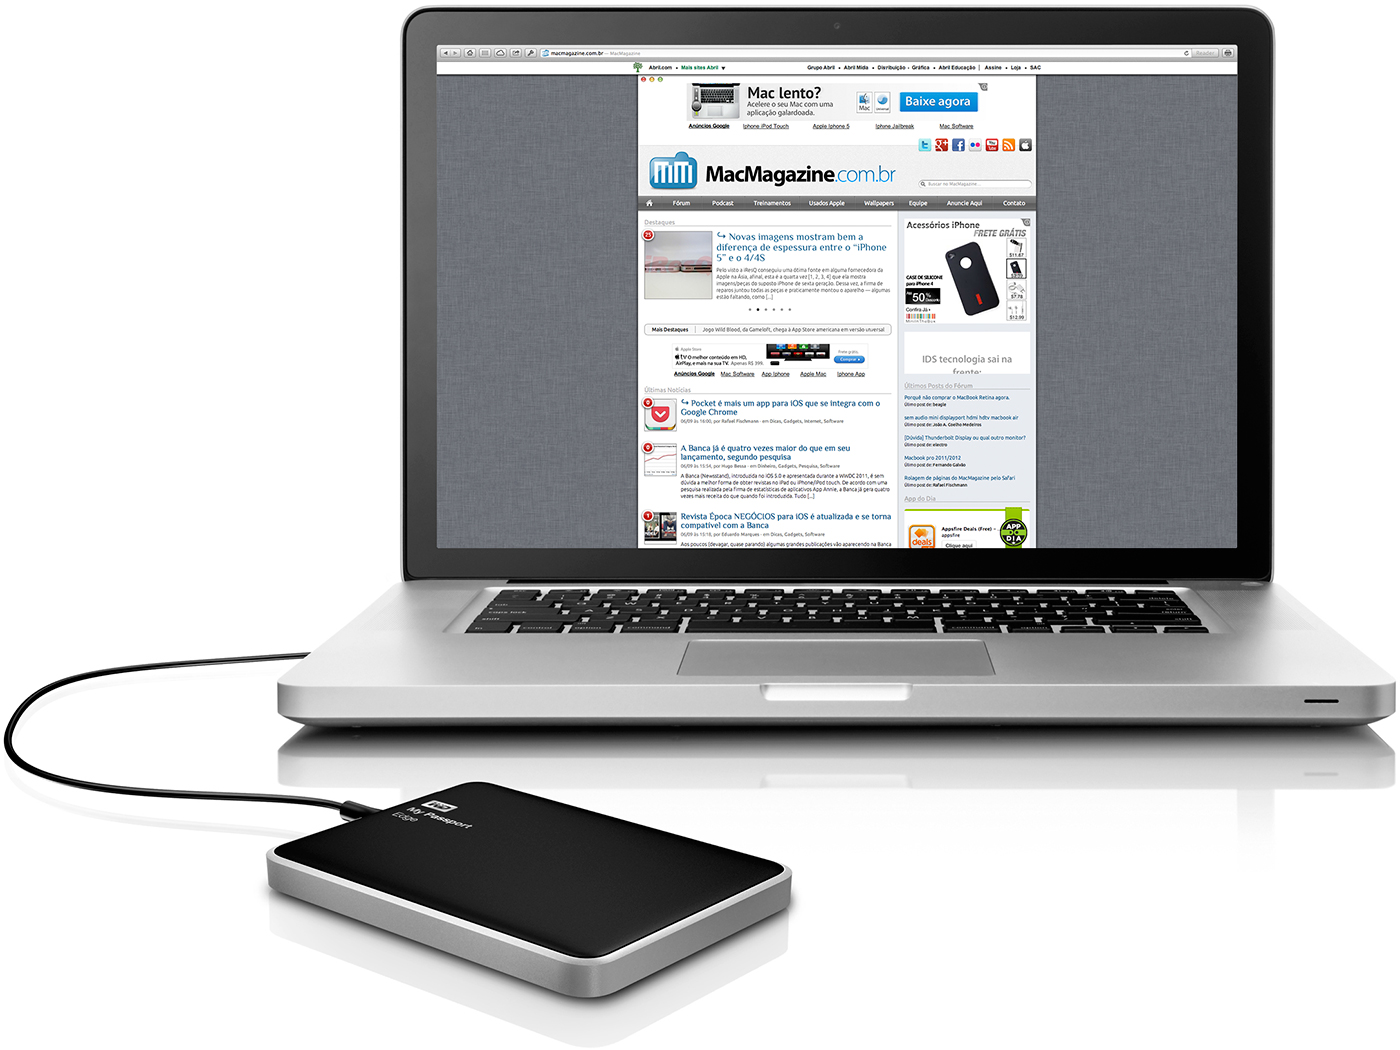 Western Digital toob turule Maci jaoks uue välise kõvaketta My Passport Edge uue versiooni